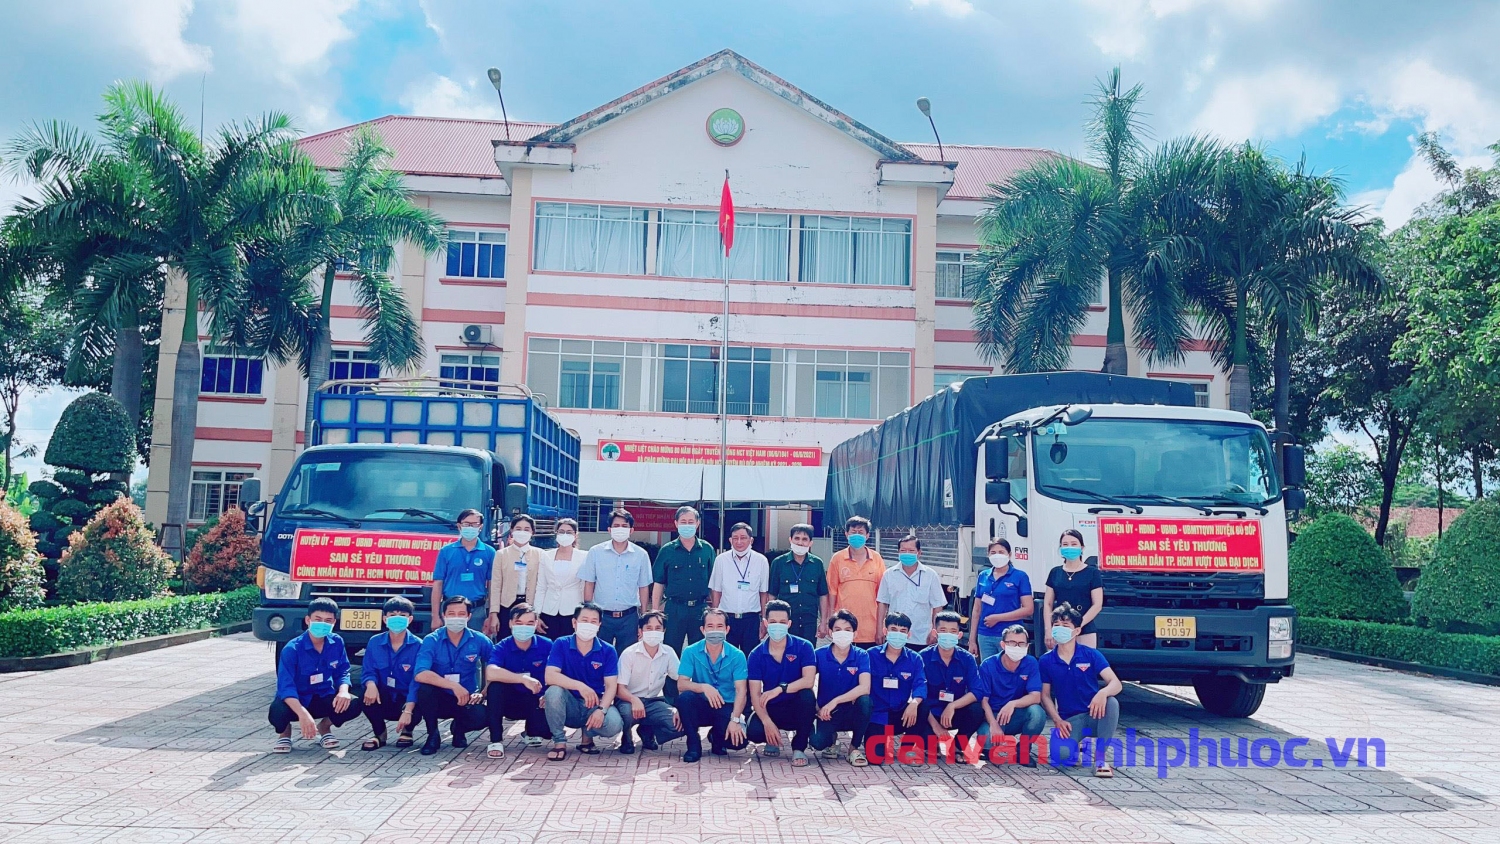 Ủy ban MTTQ Việt Nam huyện Bù Đốp hỗ trợ người dân khó khăn ở Quận 12, TP. Hồ Chí Minh vượt qua đại dịch với tình cảm trân thành nhất